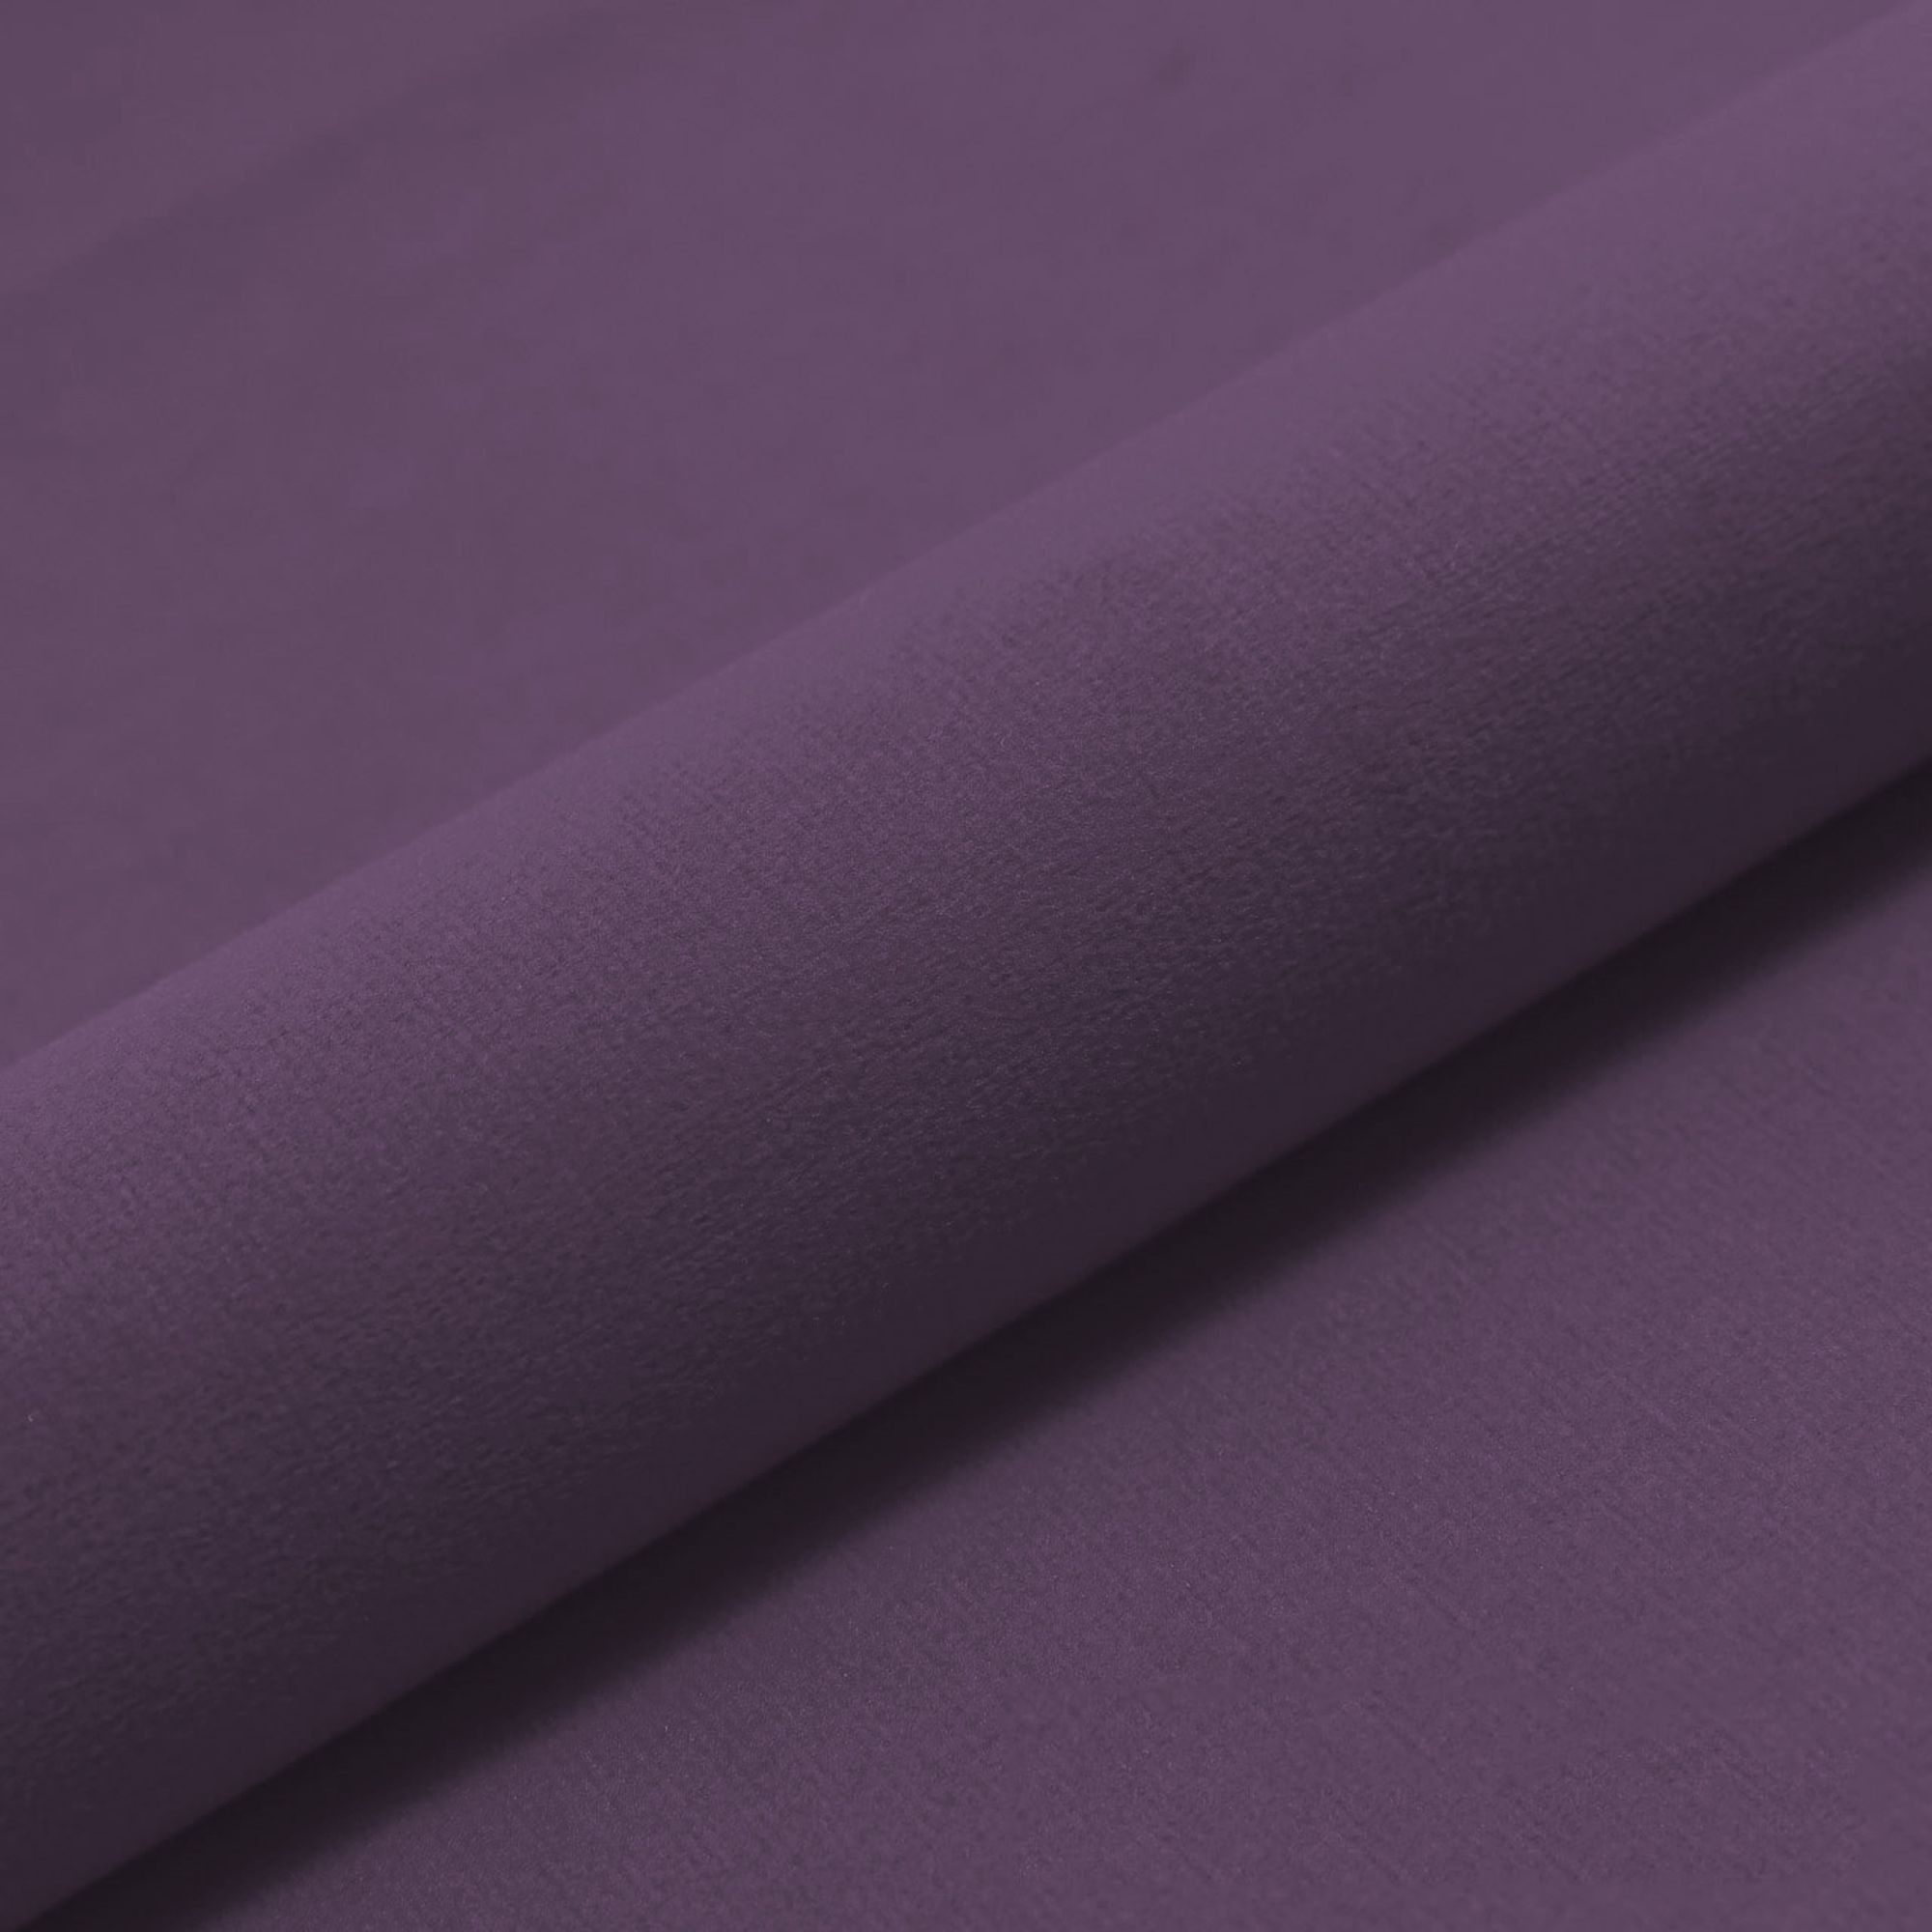 Obdélníkový polštář plyšový fialový